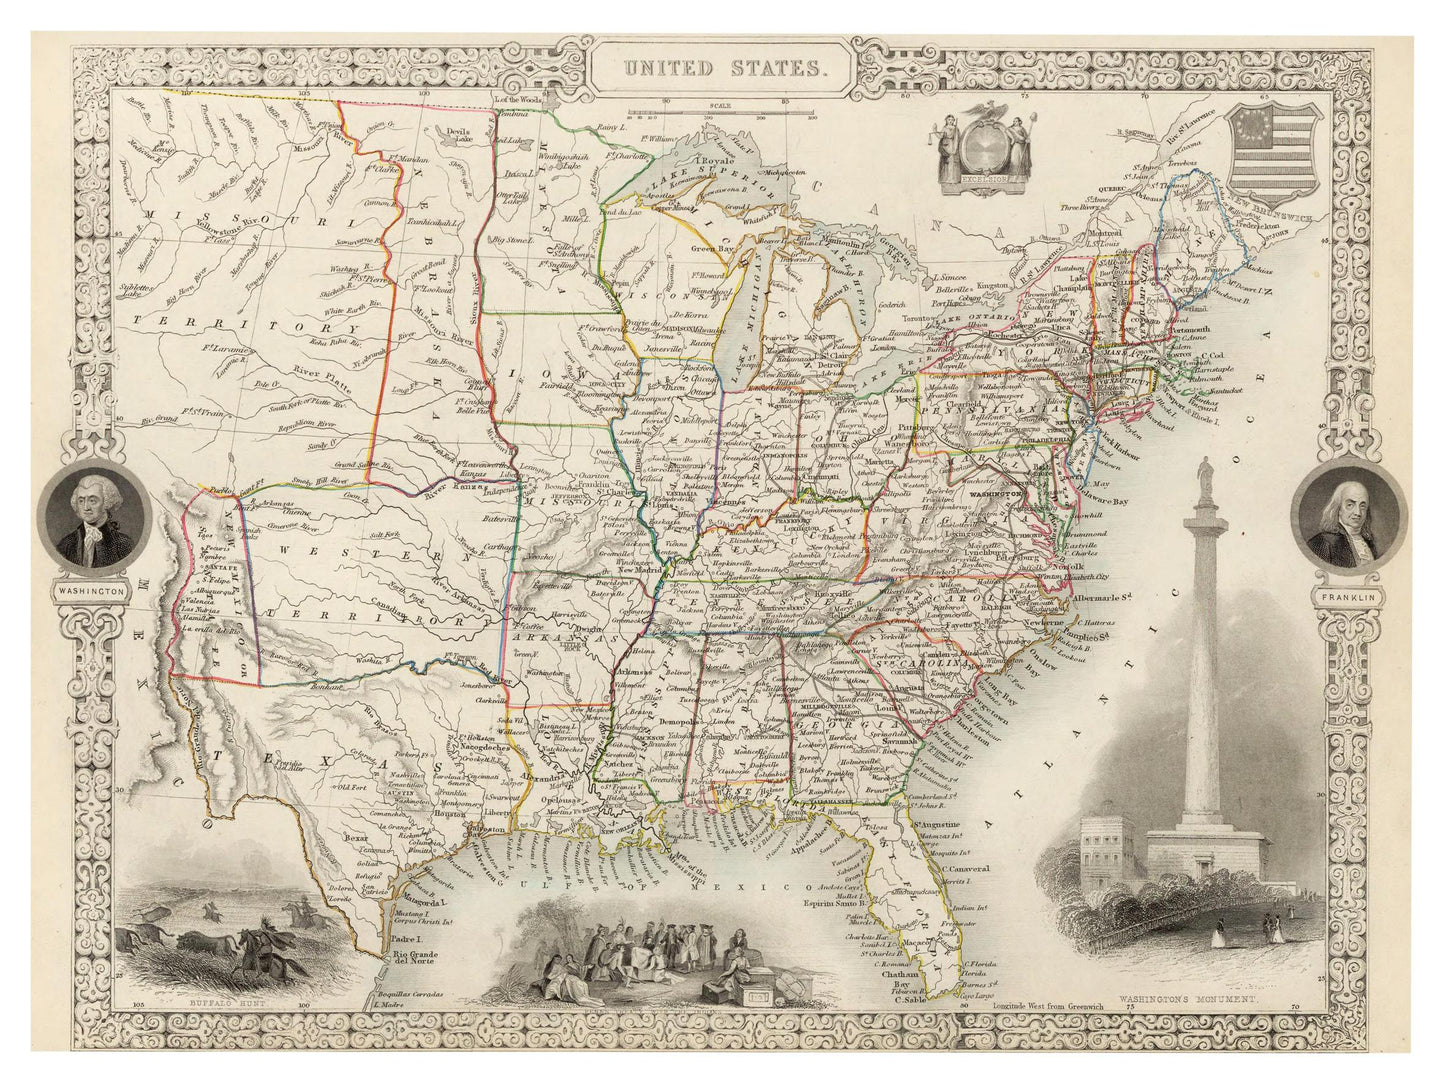 Historische Landkarte USA um 1850